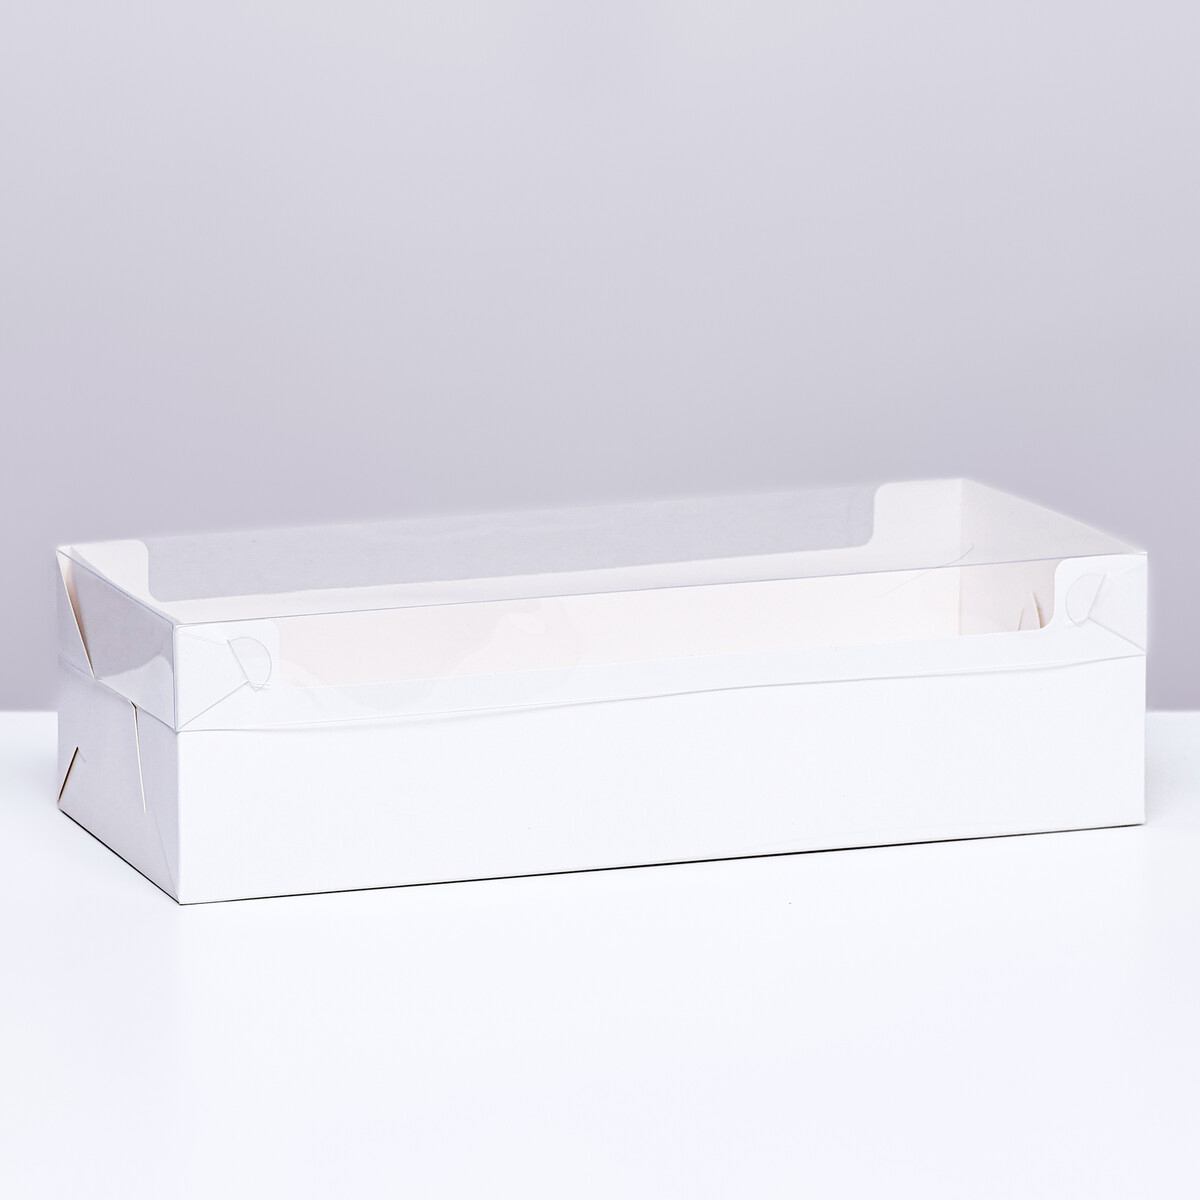 Коробка под рулет белая, 30 х 11 х 8 см коробка под рулет белая 16 5 х 11 х 9 см